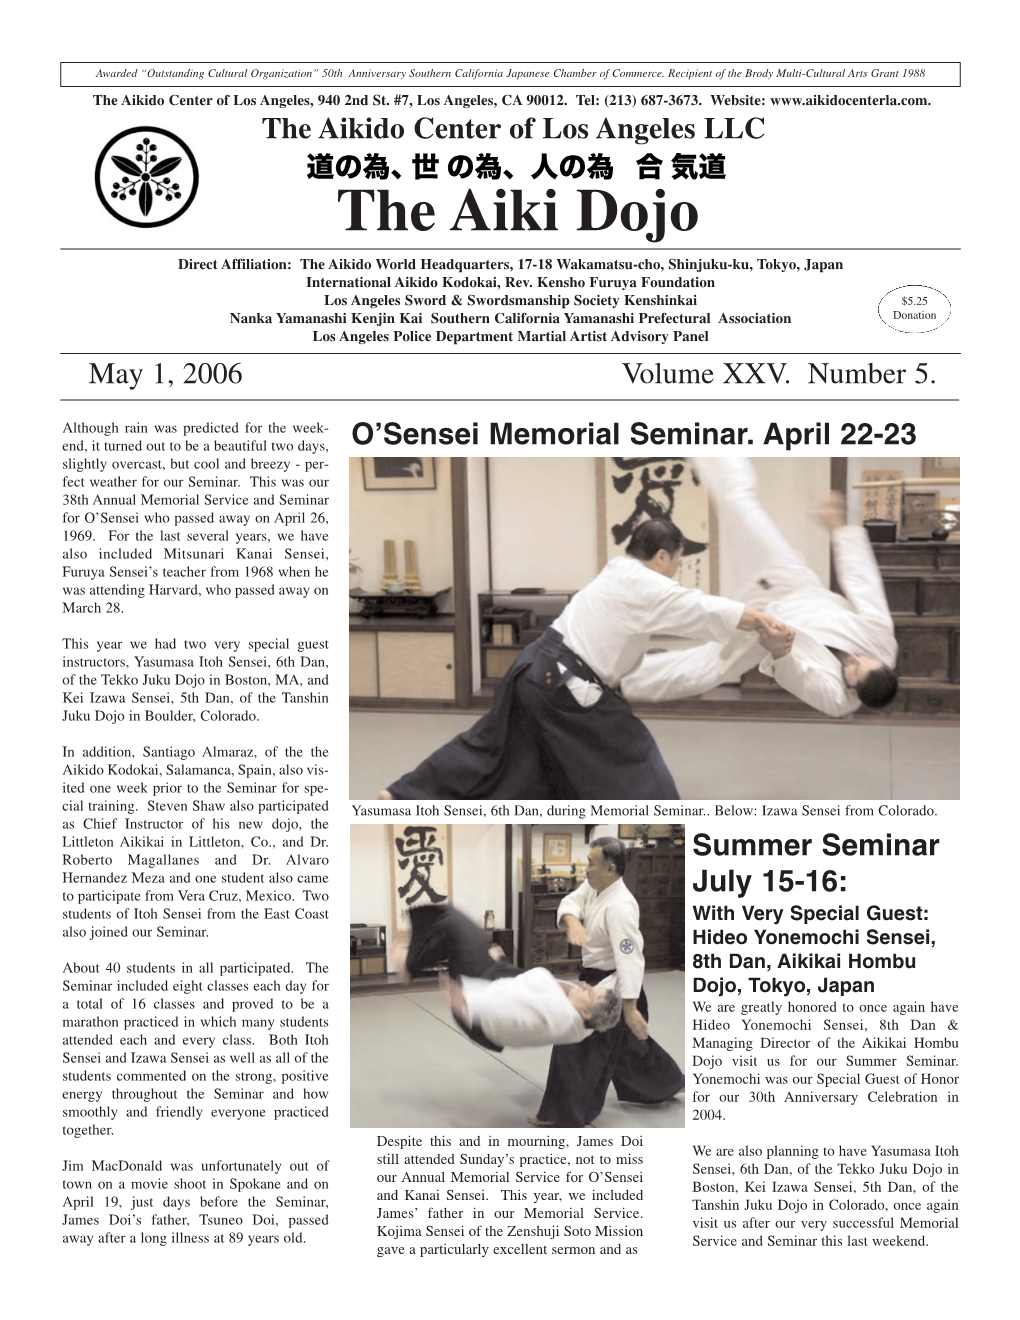 The Aiki Dojo Direct Affiliation: the Aikido World Headquarters, 17-18 Wakamatsu-Cho, Shinjuku-Ku, Tokyo, Japan International Aikido Kodokai, Rev